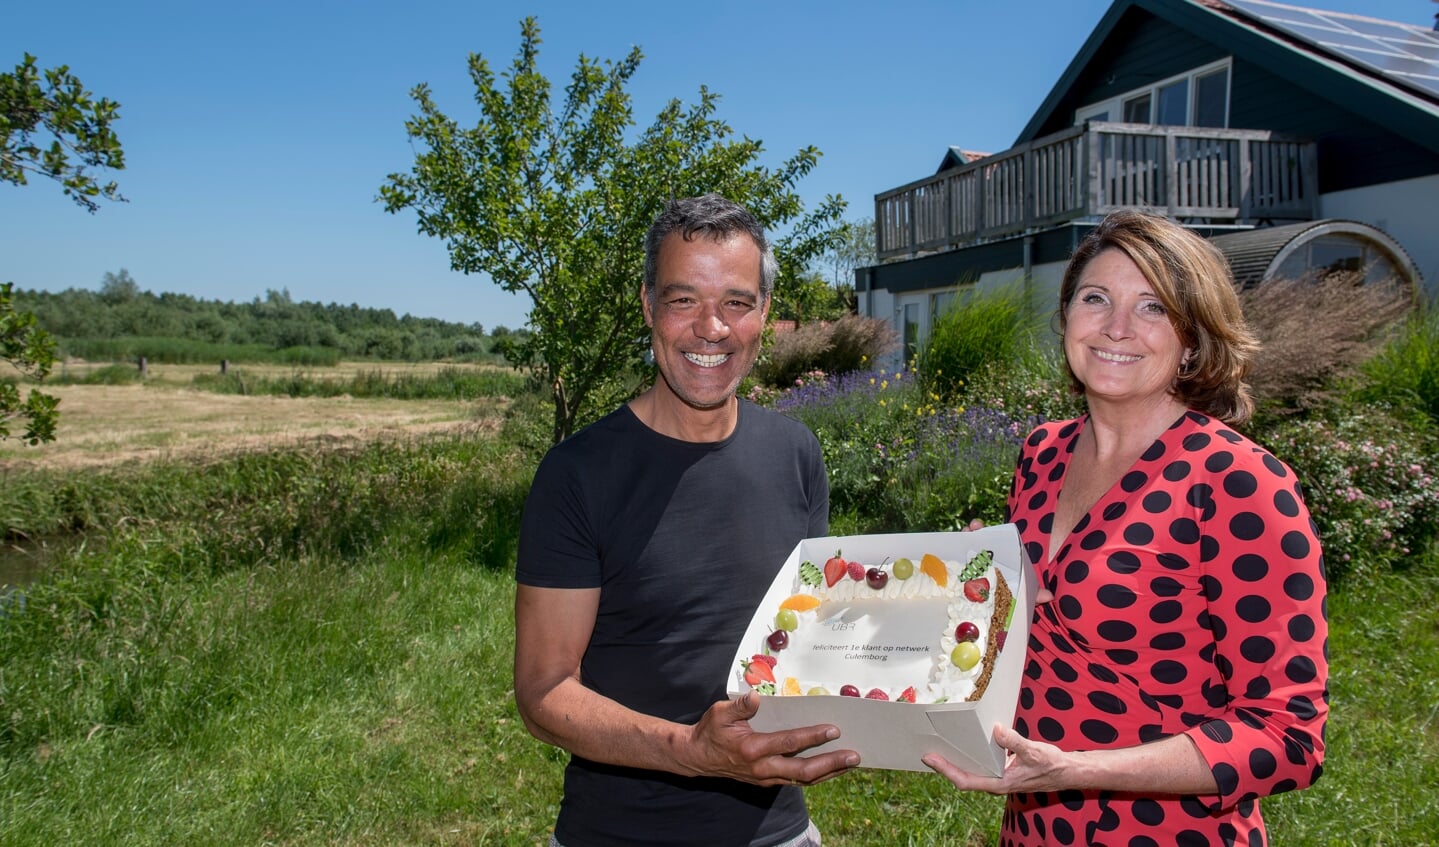 • Wethouder Monica Wichgers overhandigt een taart aan Bas - eerste gebruiker glasvezel buitengebied Culemborg -